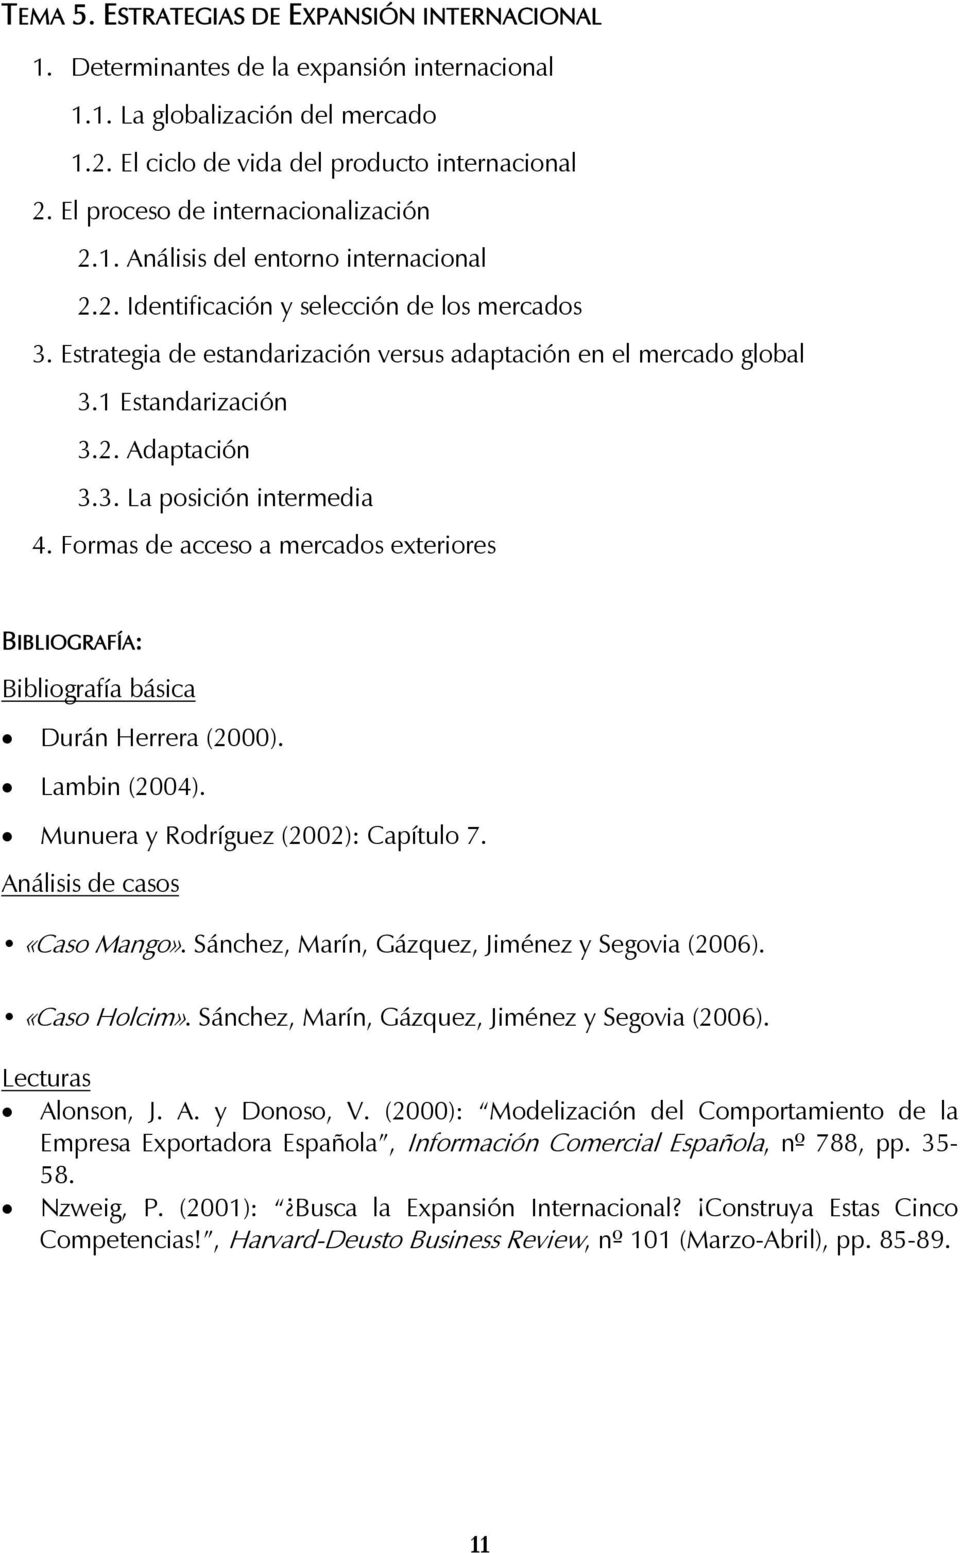 1 Estandarización 3.2. Adaptación 3.3. La posición intermedia 4. Formas de acceso a mercados exteriores Durán Herrera (2000). Lambin (2004). Munuera y Rodríguez (2002): Capítulo 7.